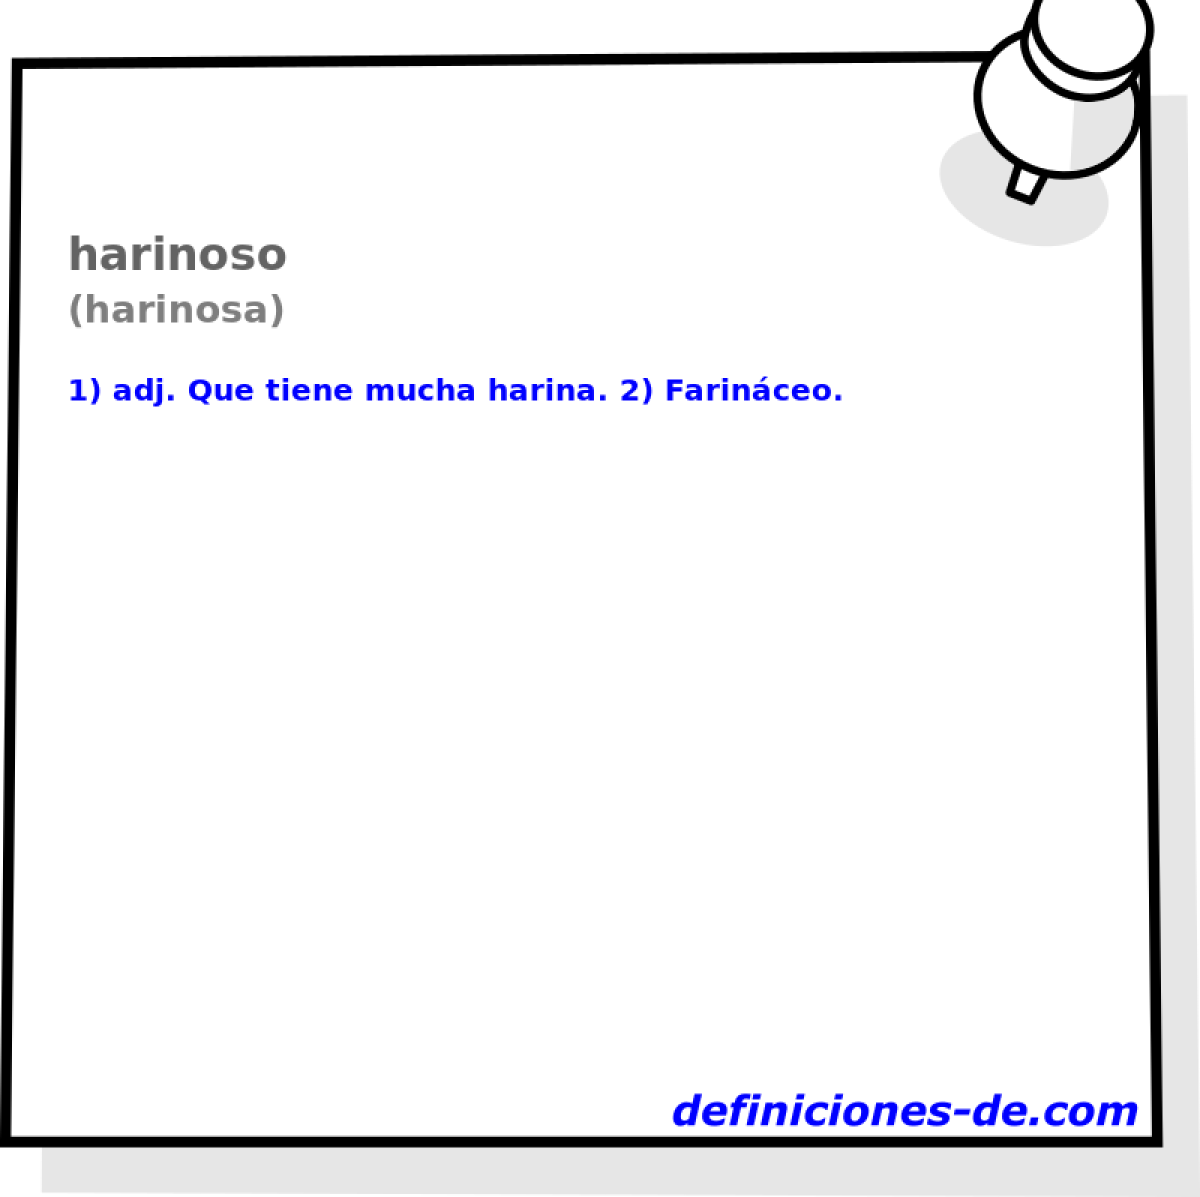 harinoso (harinosa)